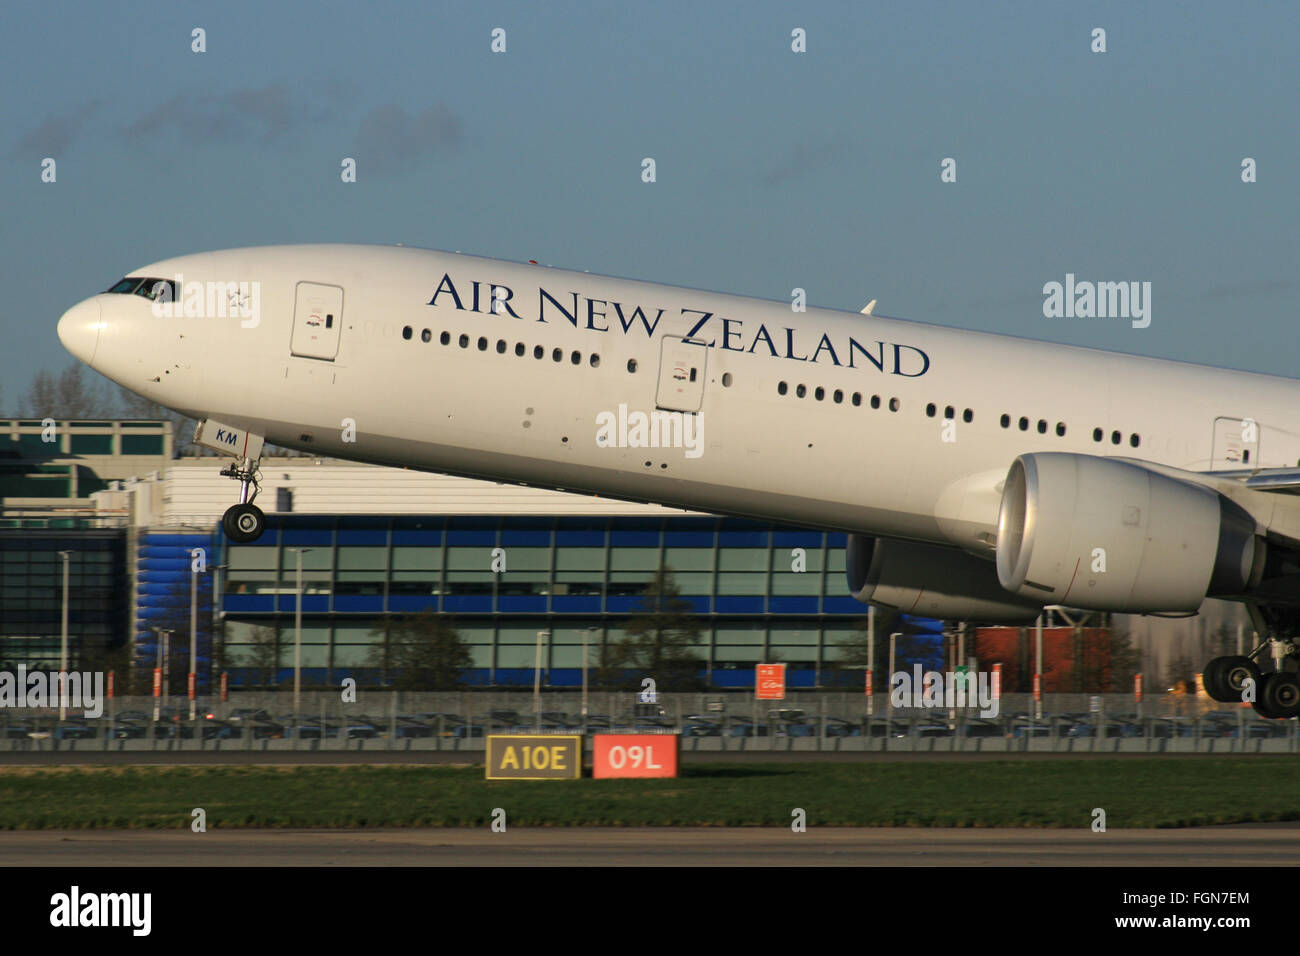 AIR NEW ZEALAND Stockfoto